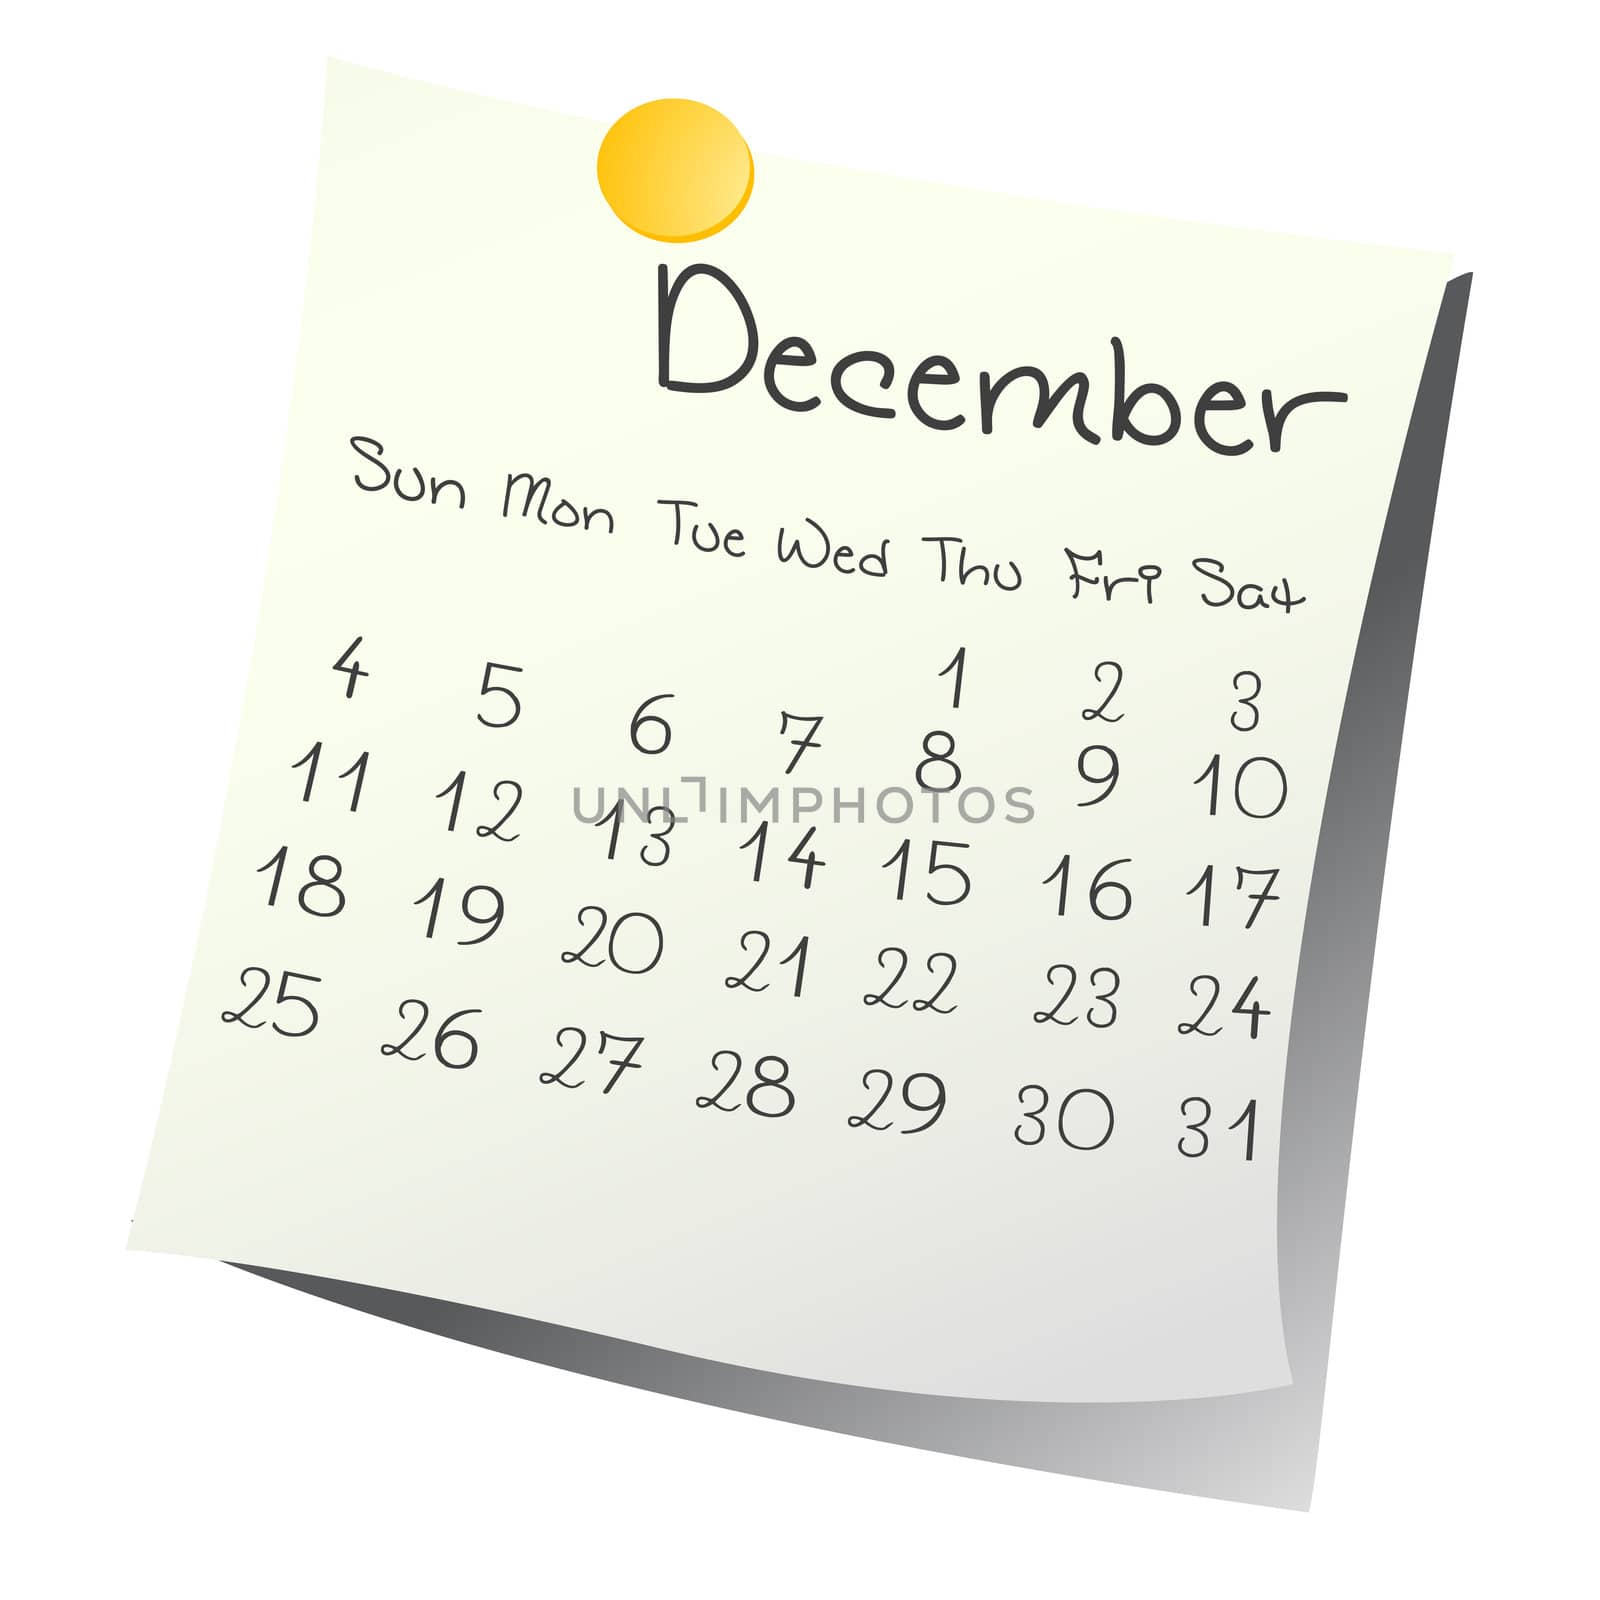 Calendar for December 2011 on paper